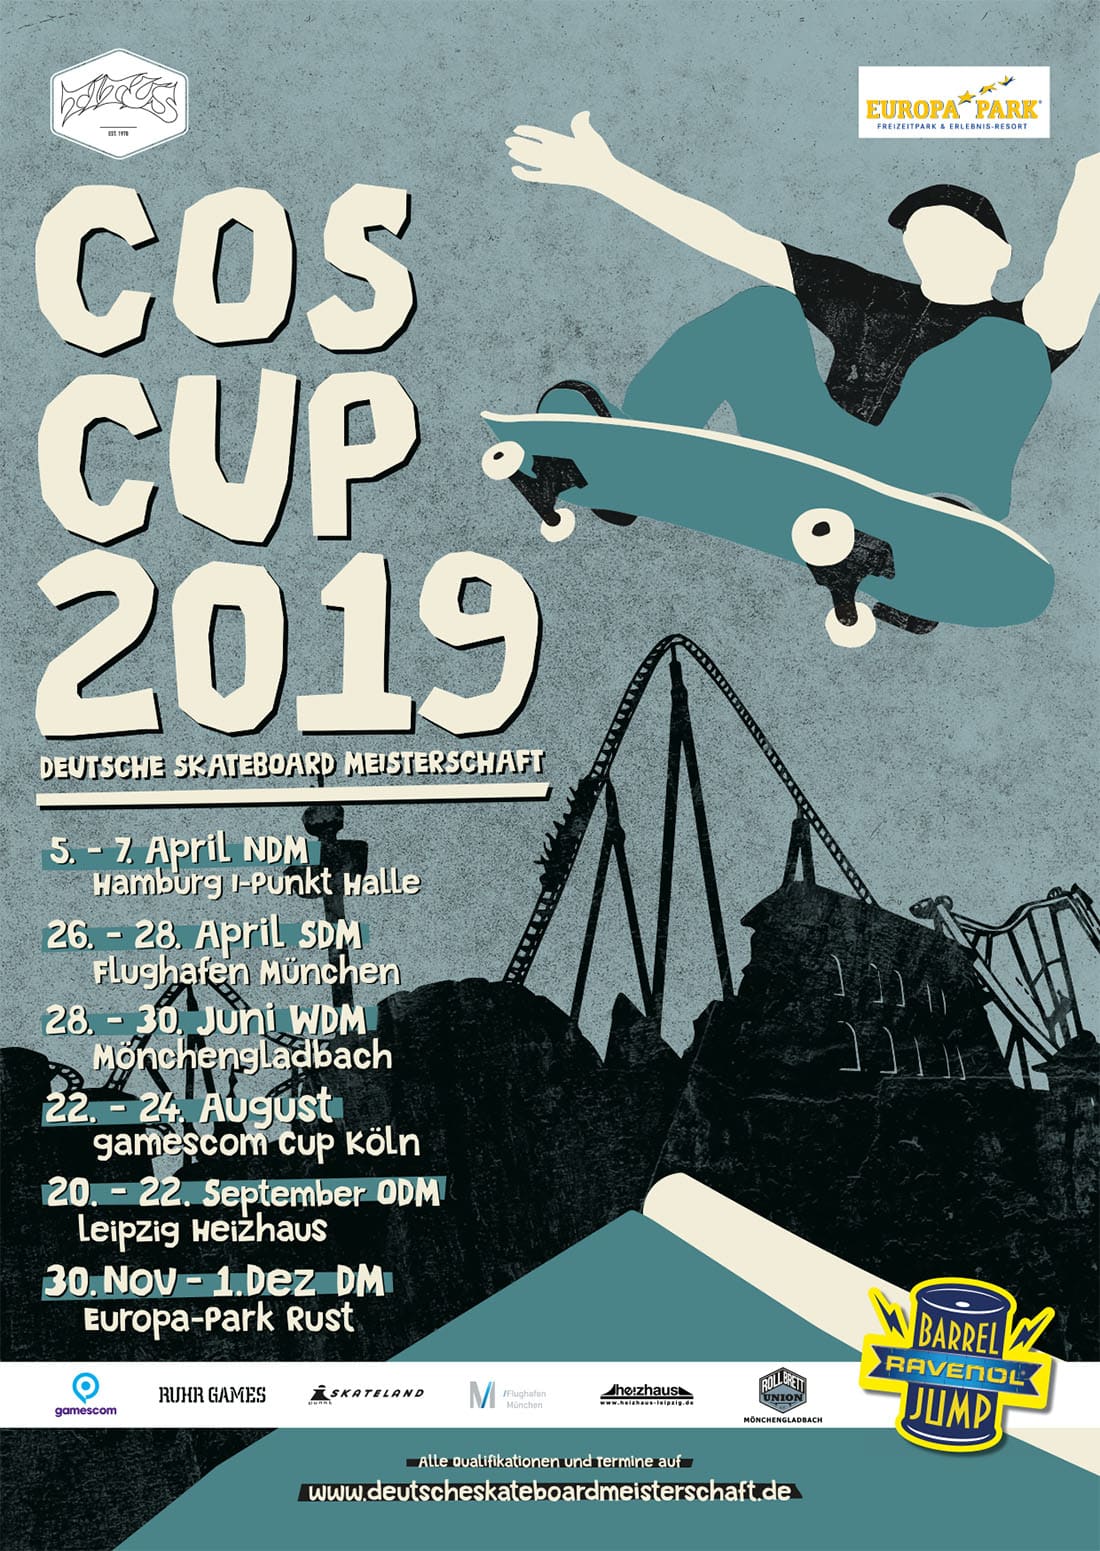 Cos-cup-2019-deutsche-skateboard-meisterschaft-termine-irregularskatemag